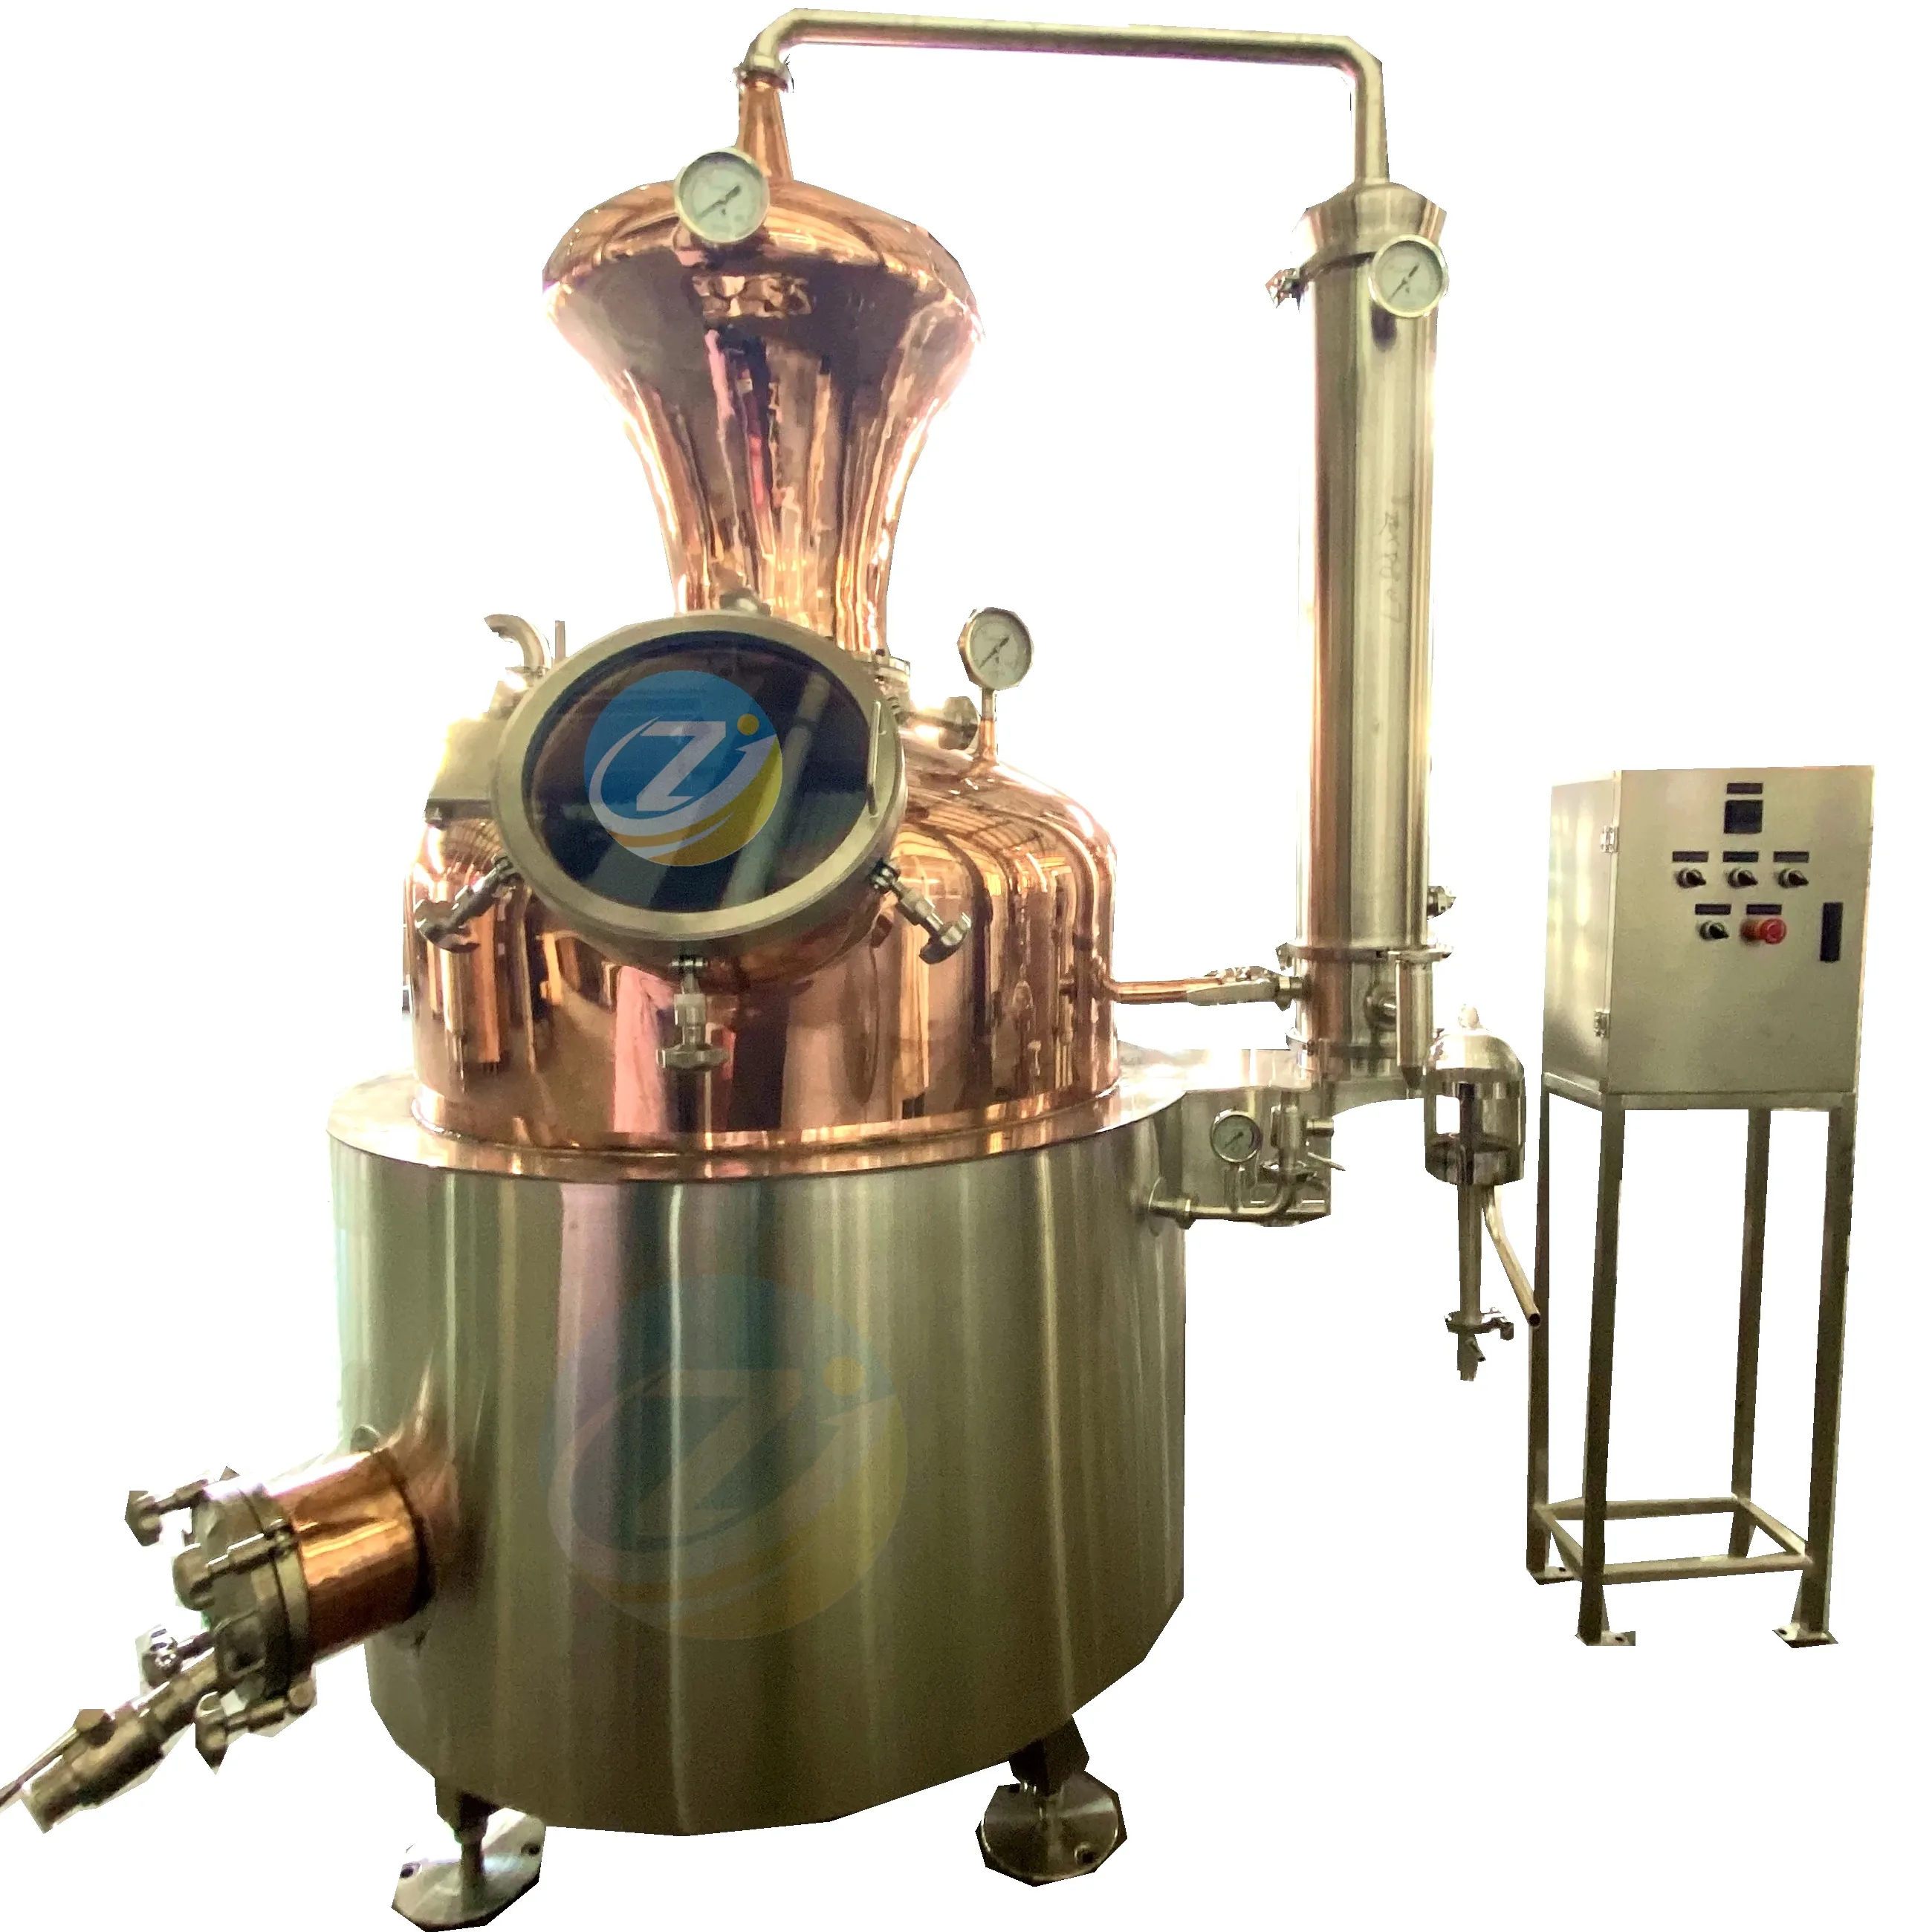 ZJ 500L attrezzatura di distillazione Whisky distillare spirito ancora alcol Moonshine macchina